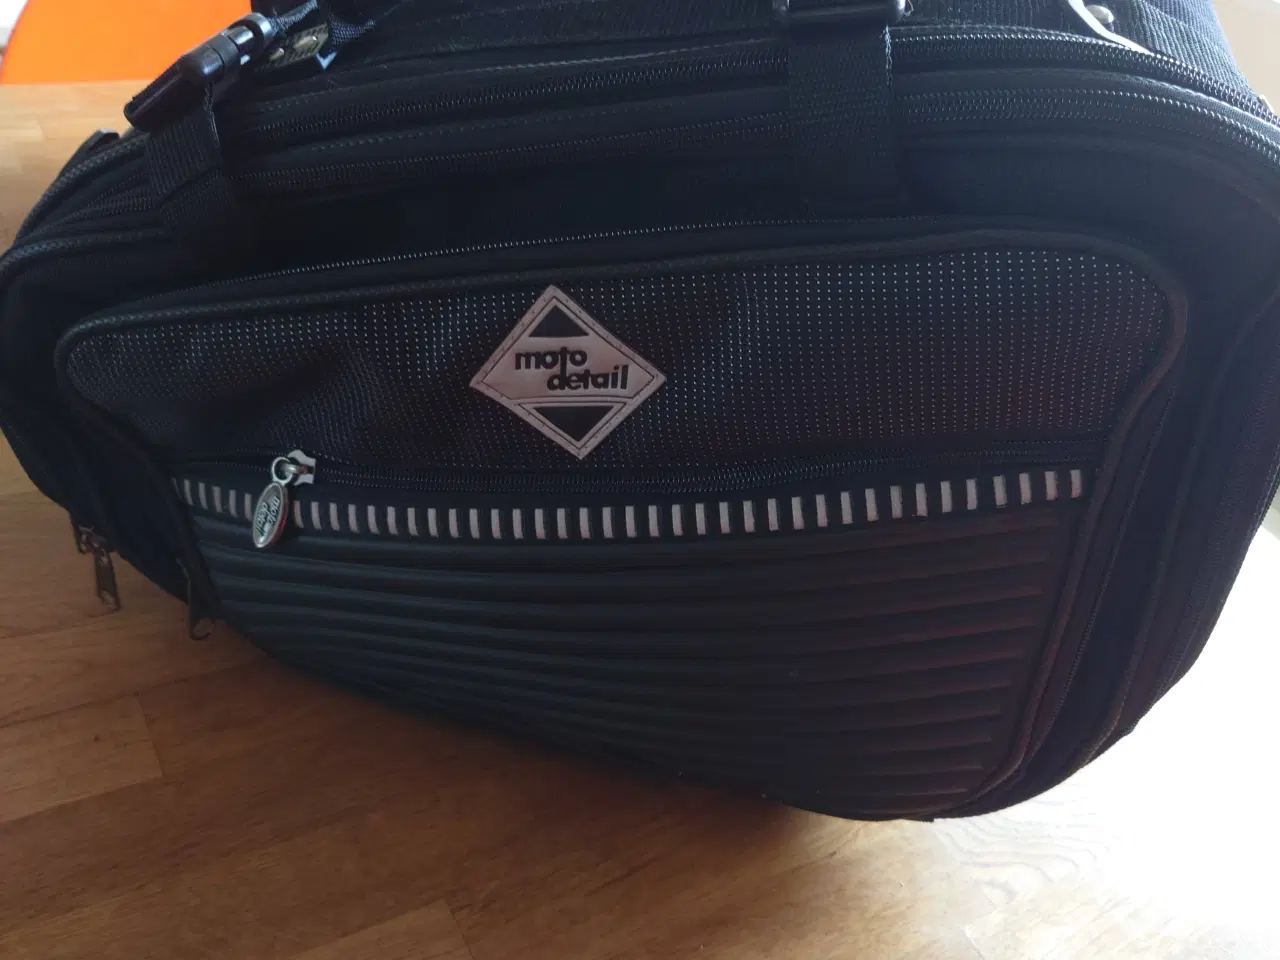 Billede 7 - 2 stk Moto Detail  taske til motorcykel 